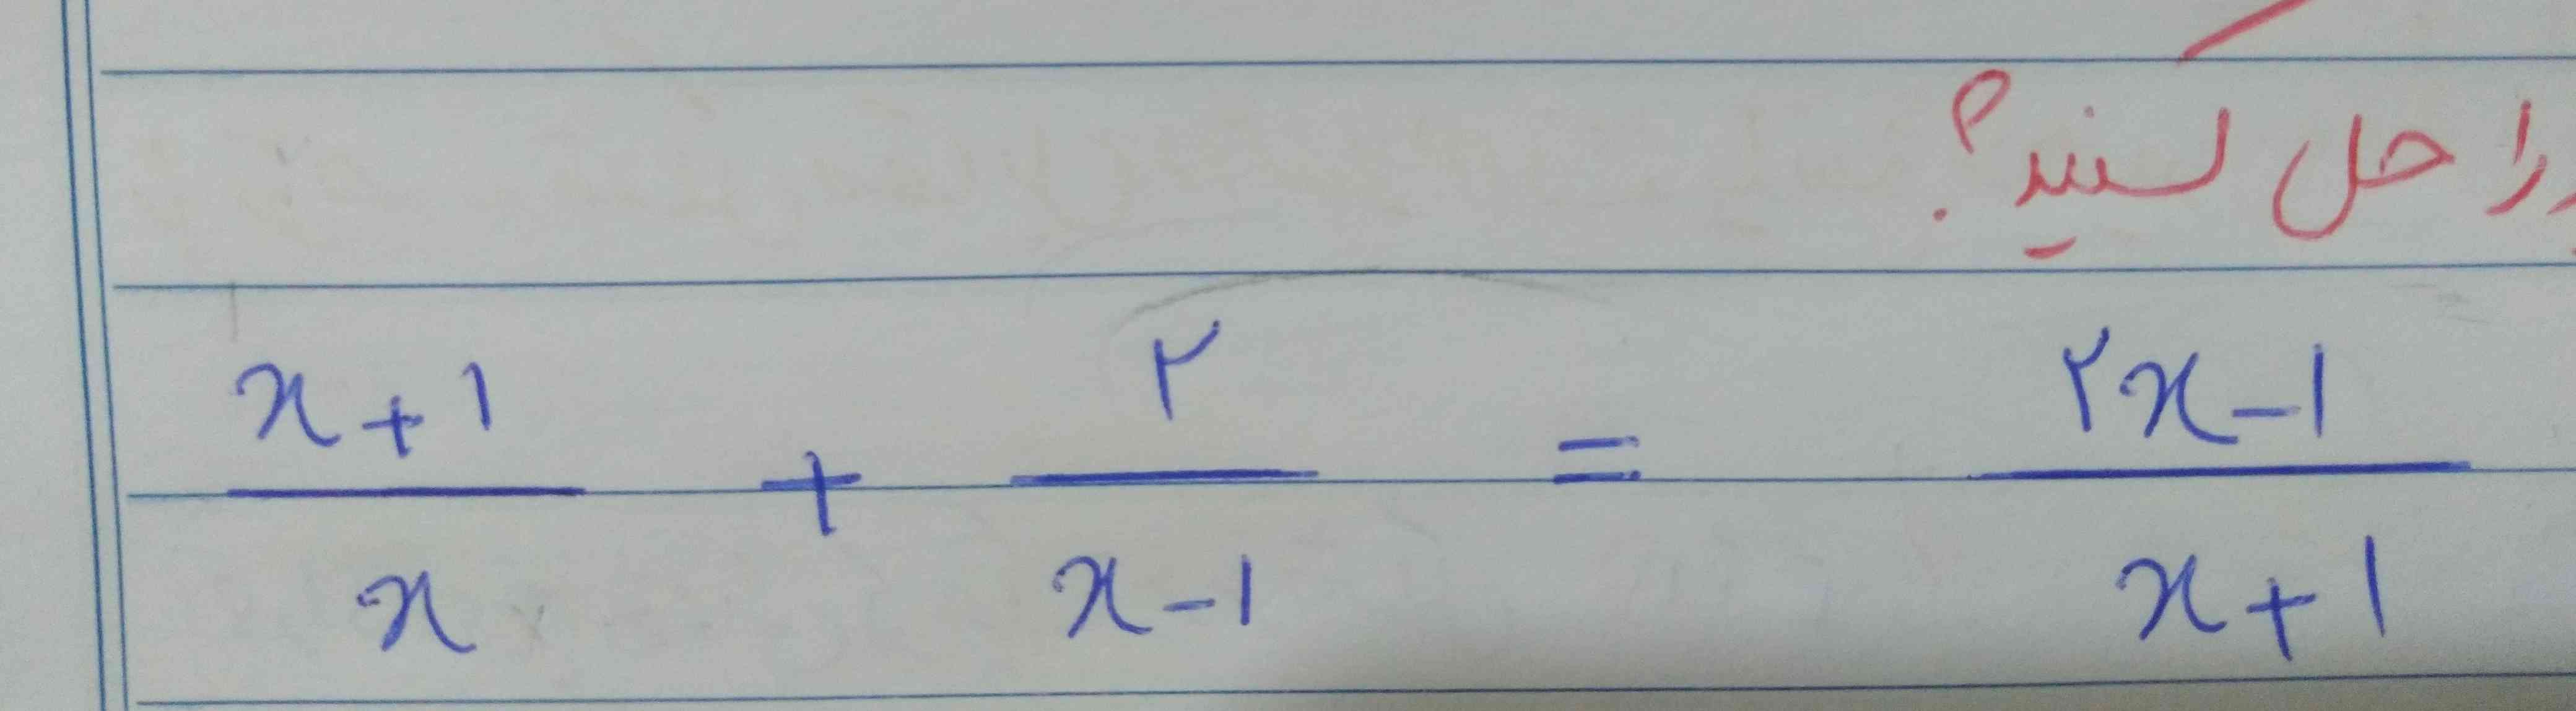 سلام یه جواب درست و توضیح راه حل برای این معادله نیاز دارم  🙏